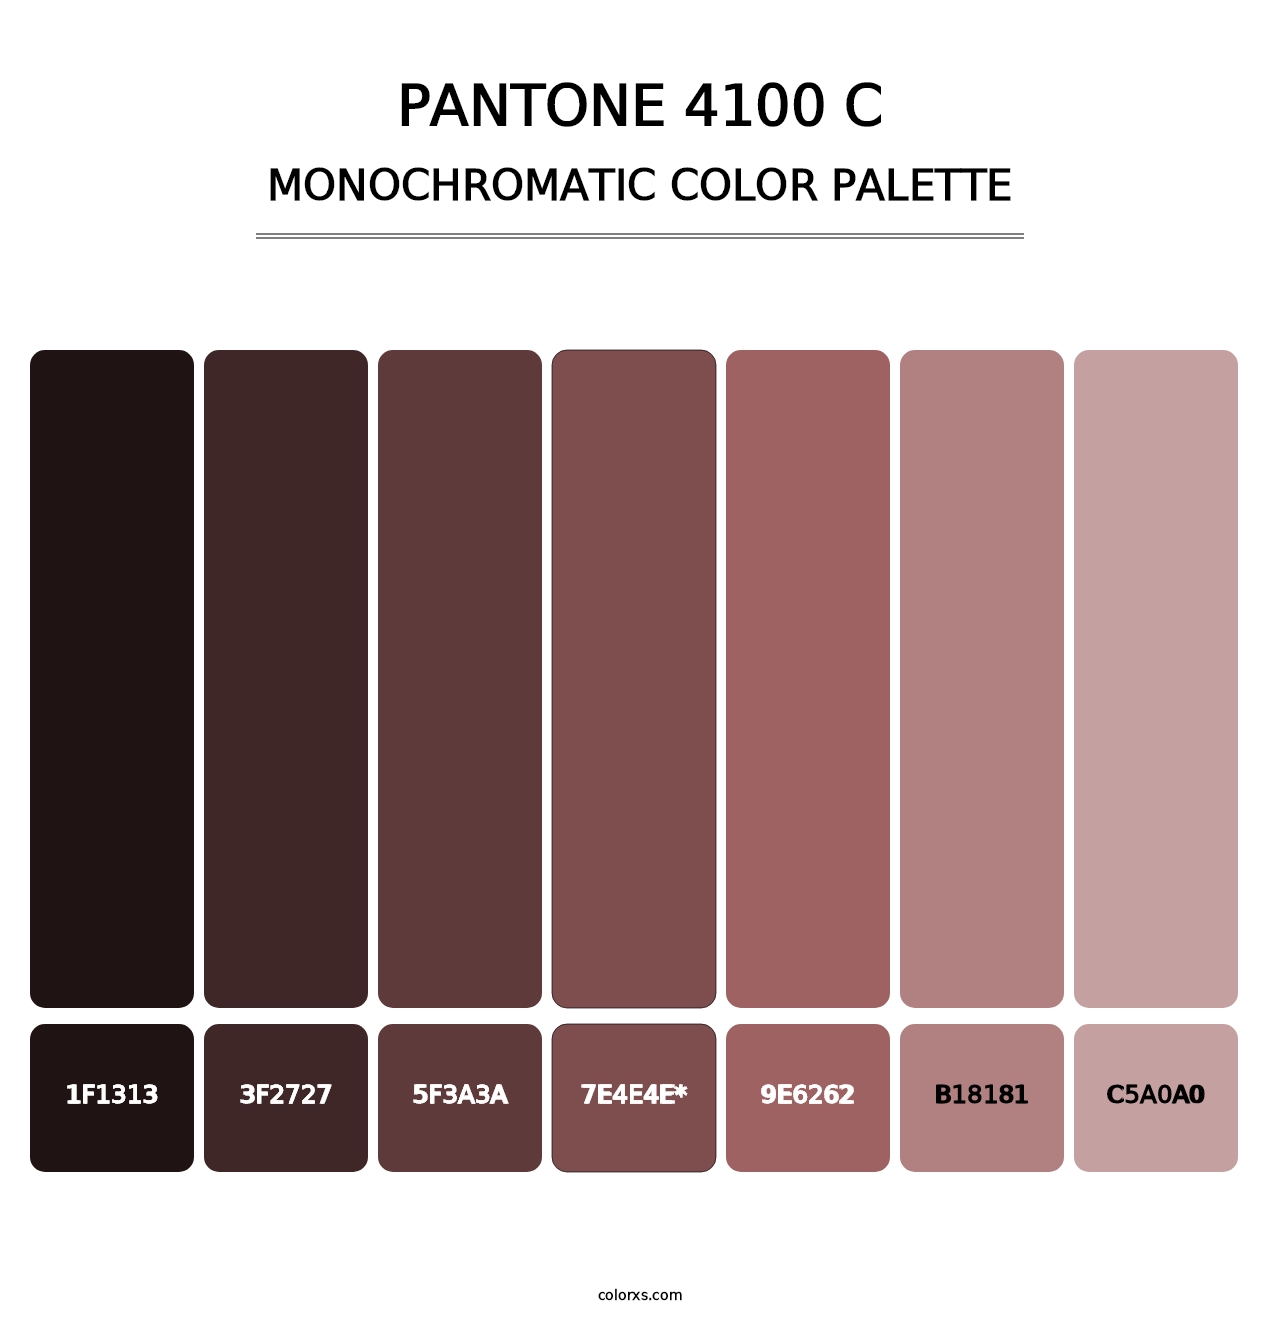 PANTONE 4100 C - Monochromatic Color Palette